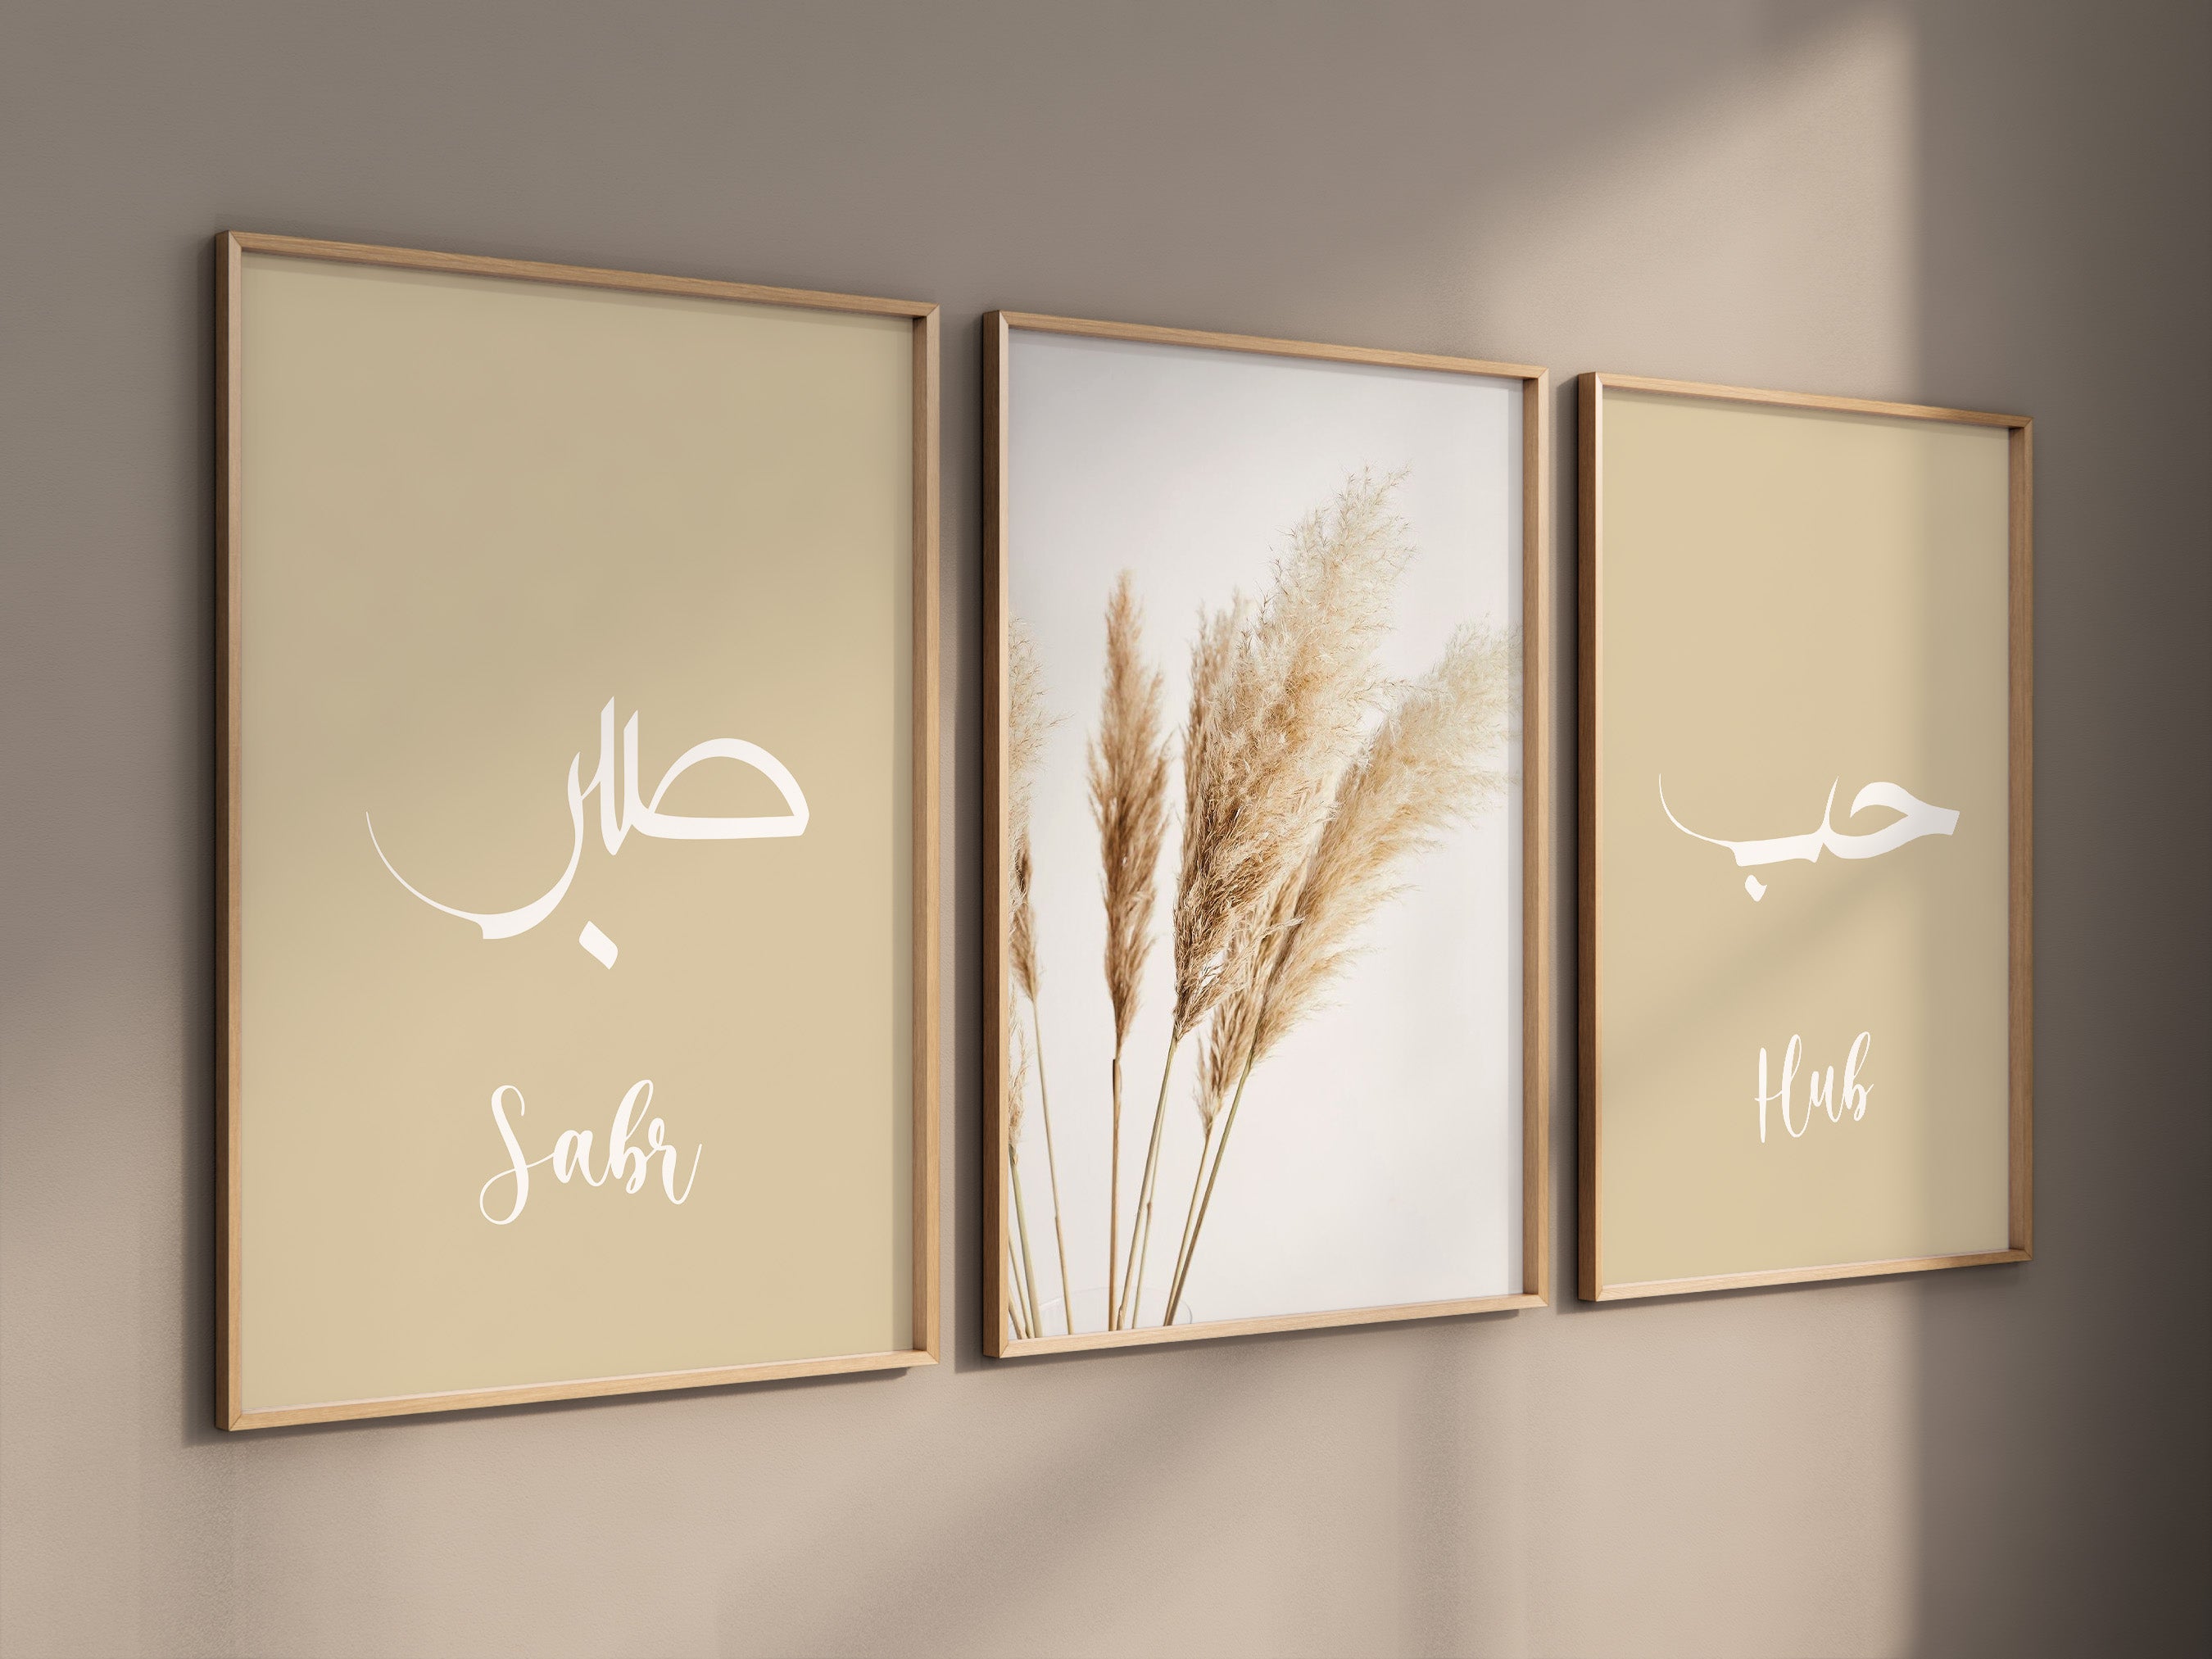 Set of 3 Beige Sabr & Hub, ISLAMIC WALL ART PRINT, ISLAMIC POSTER - Peaceful Arts ltd